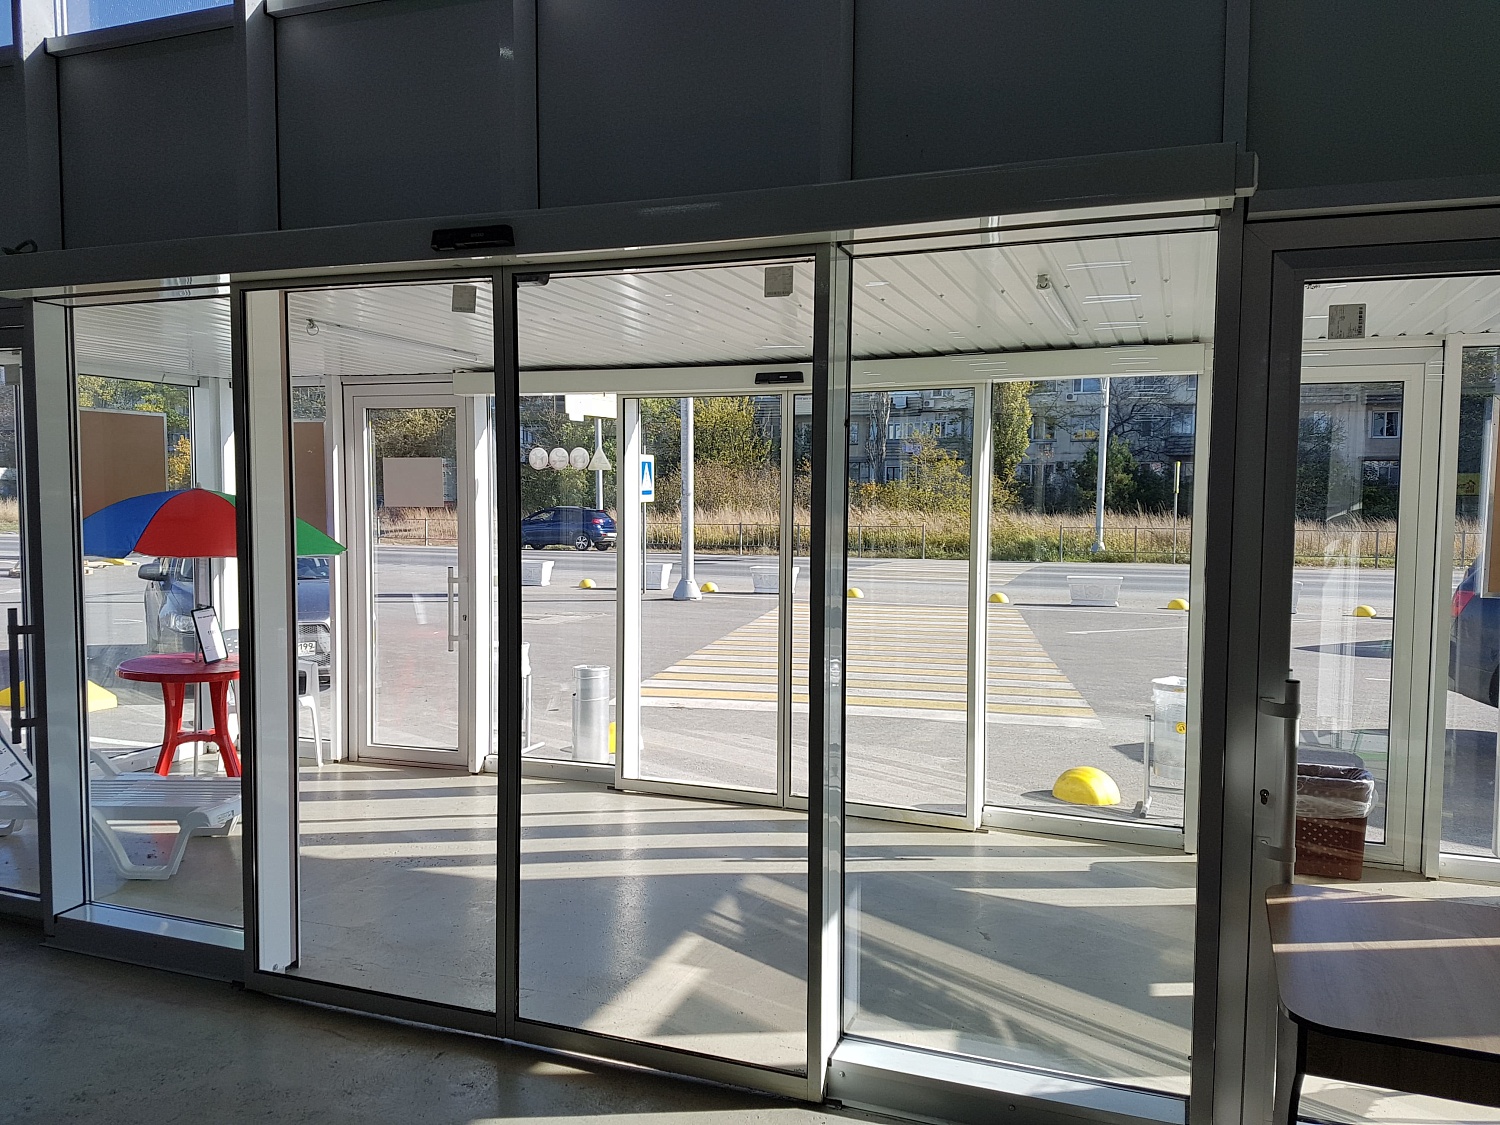 Заказать установку автоматических дверей в Симферополе. Монтаж выполняется командой профессионалов с опытом работы более 9 лет. 